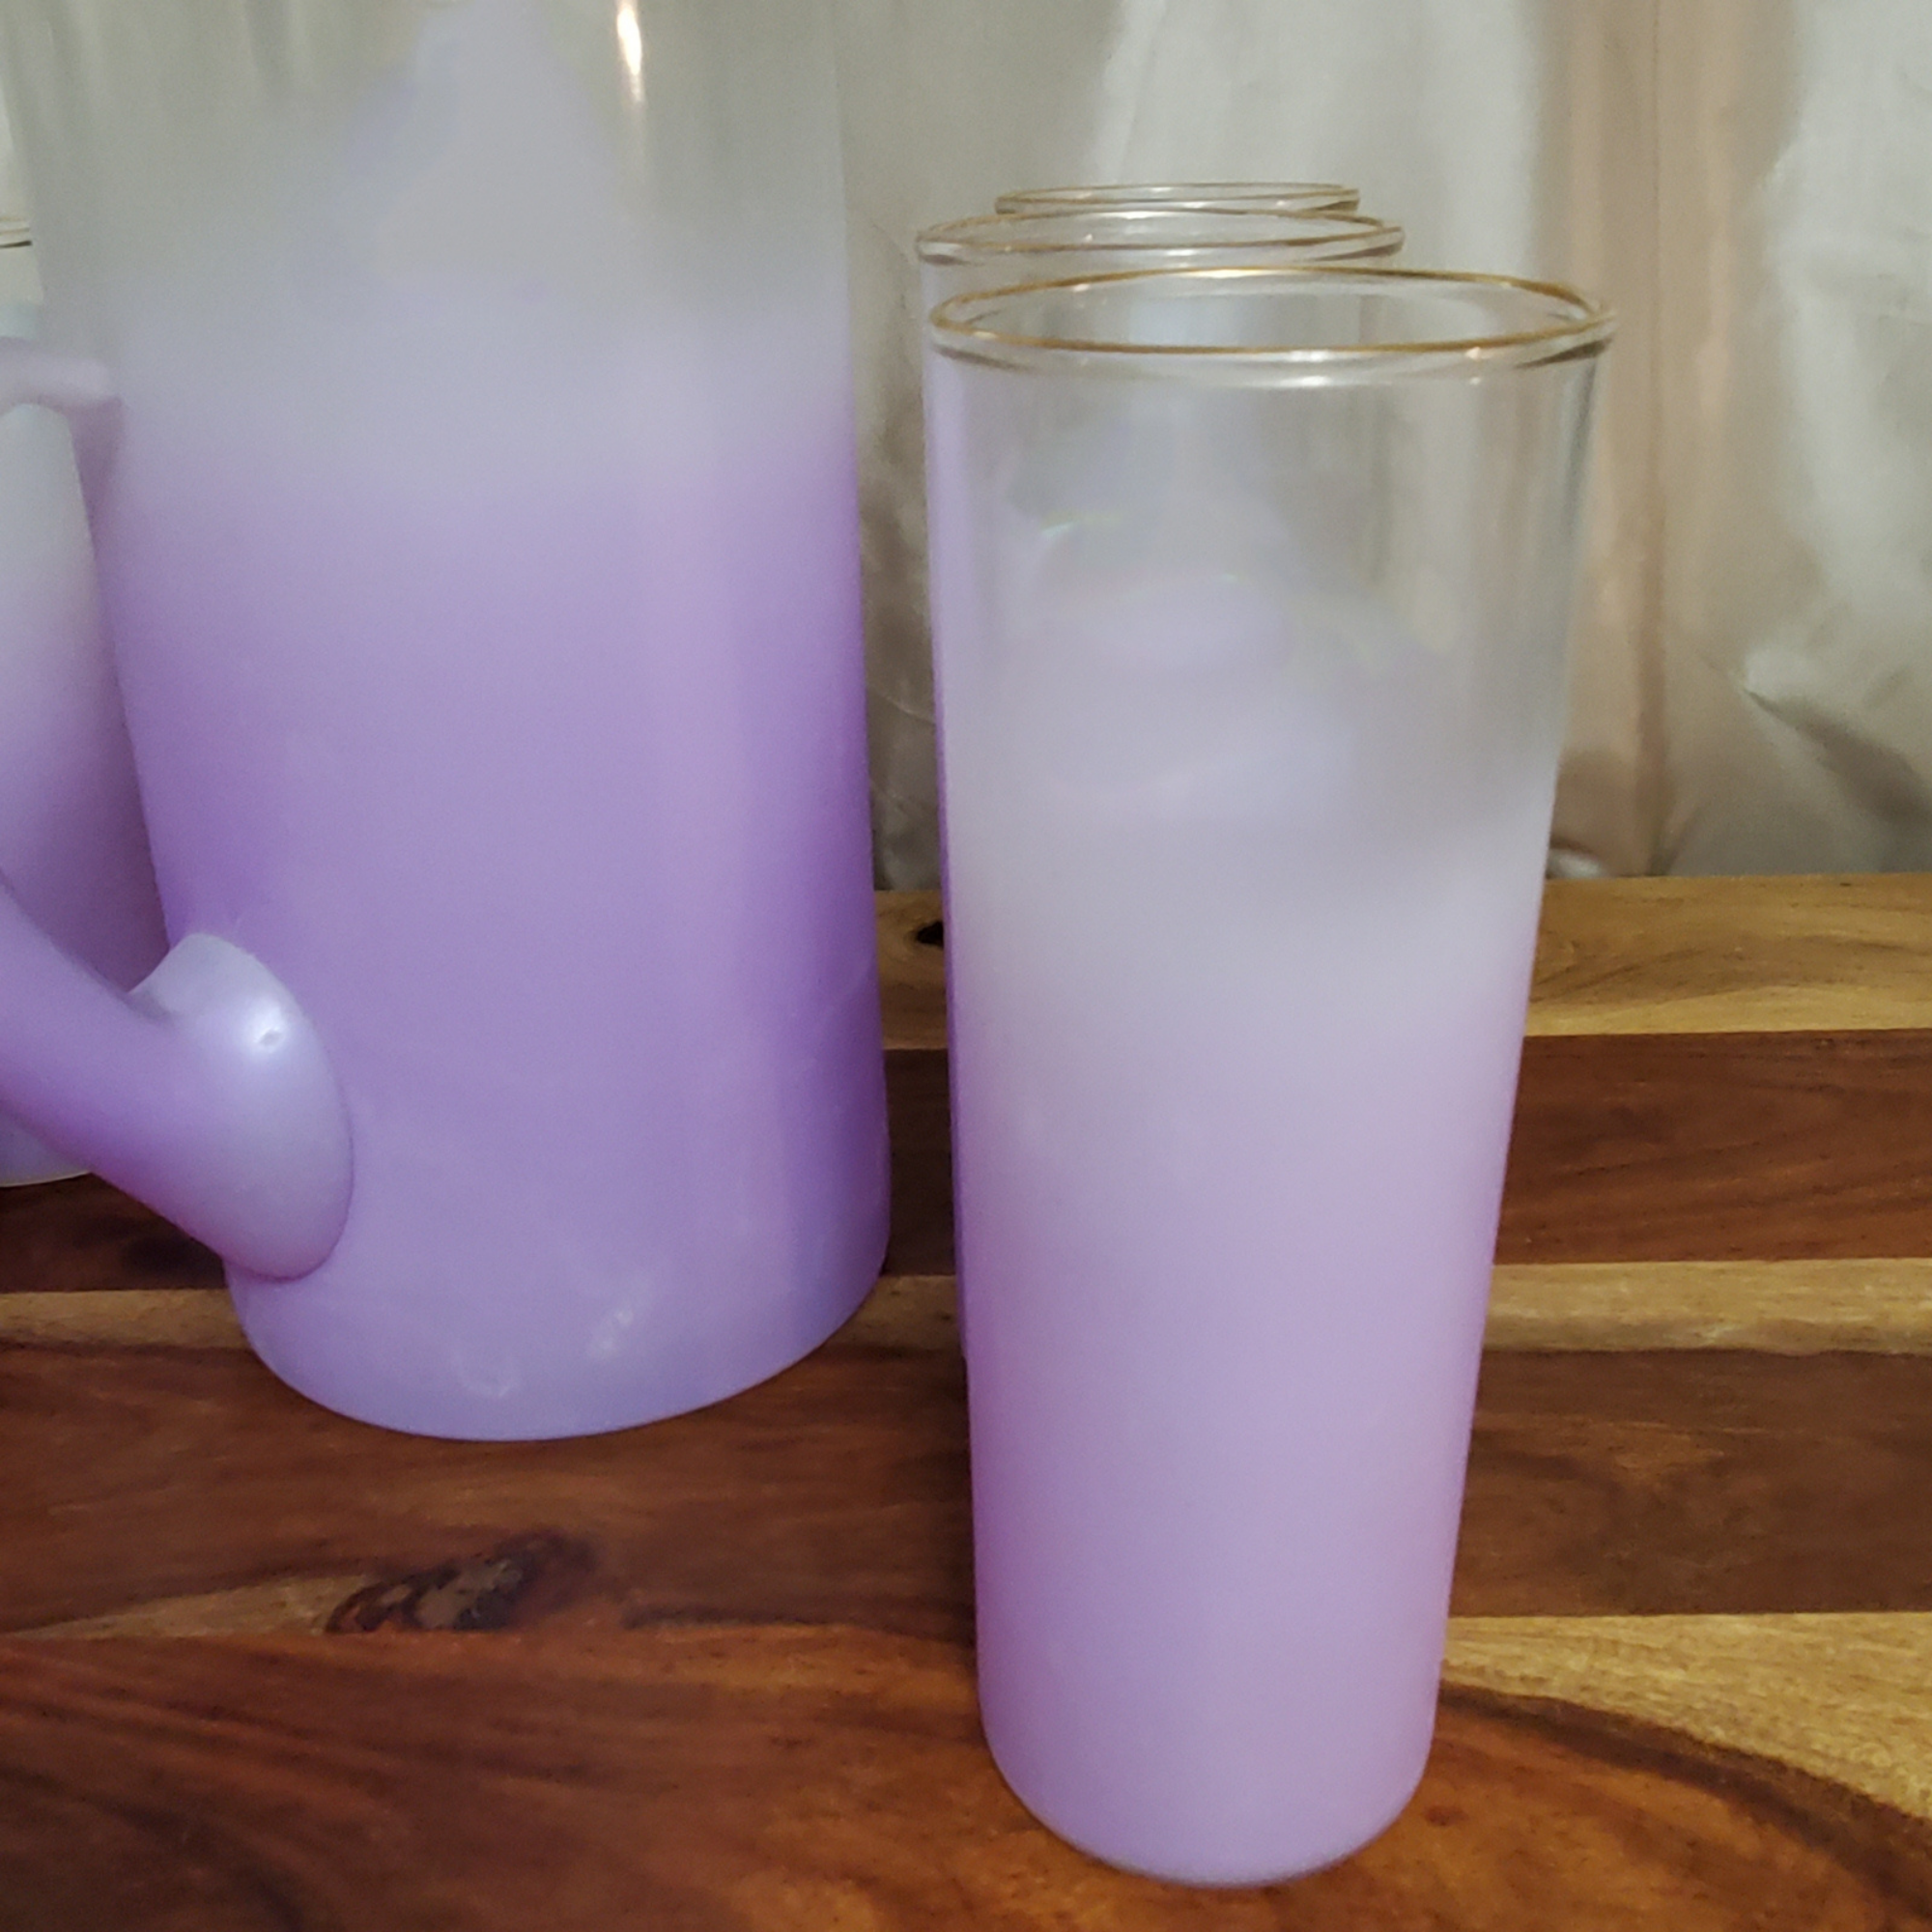 Blendo Purple Lilac Ombre Pitcher and 6 Vintage Glass Set - MCM Lavender Pitcher Set